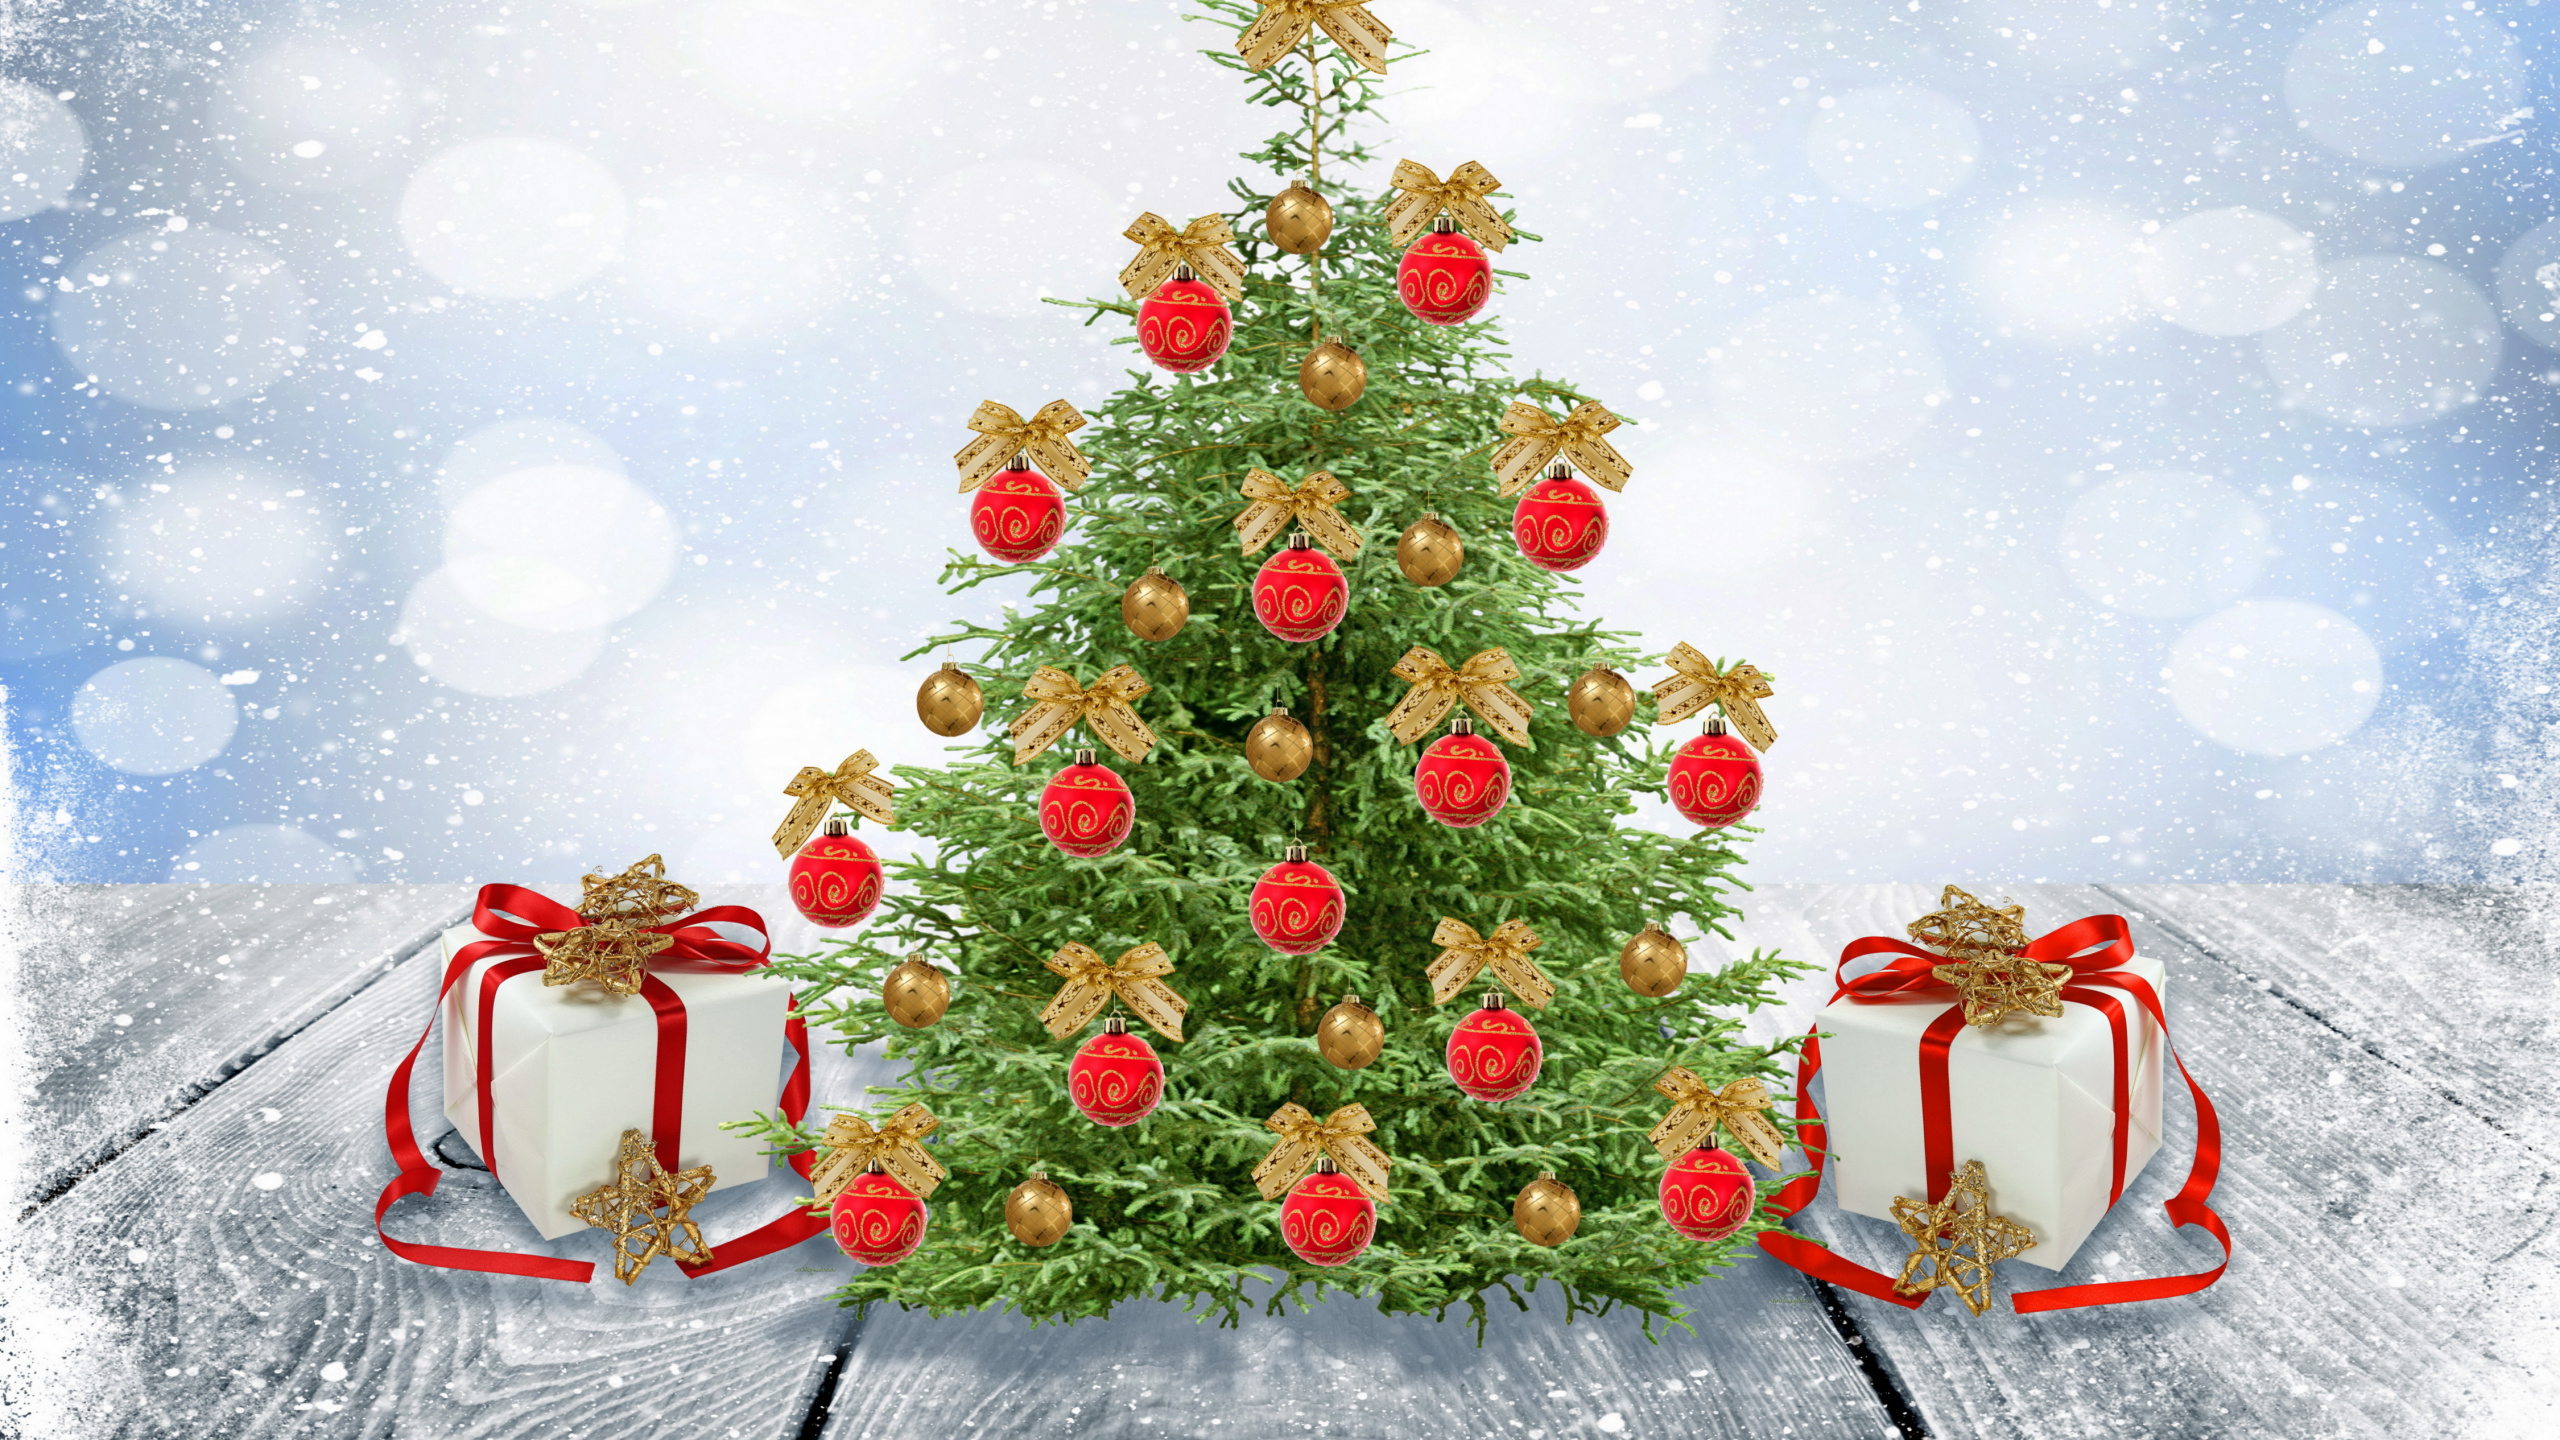 Neujahr, Weihnachten, Weihnachtsmann, Weihnachtsbaum, Weihnachtsdekoration. Wallpaper in 2560x1440 Resolution